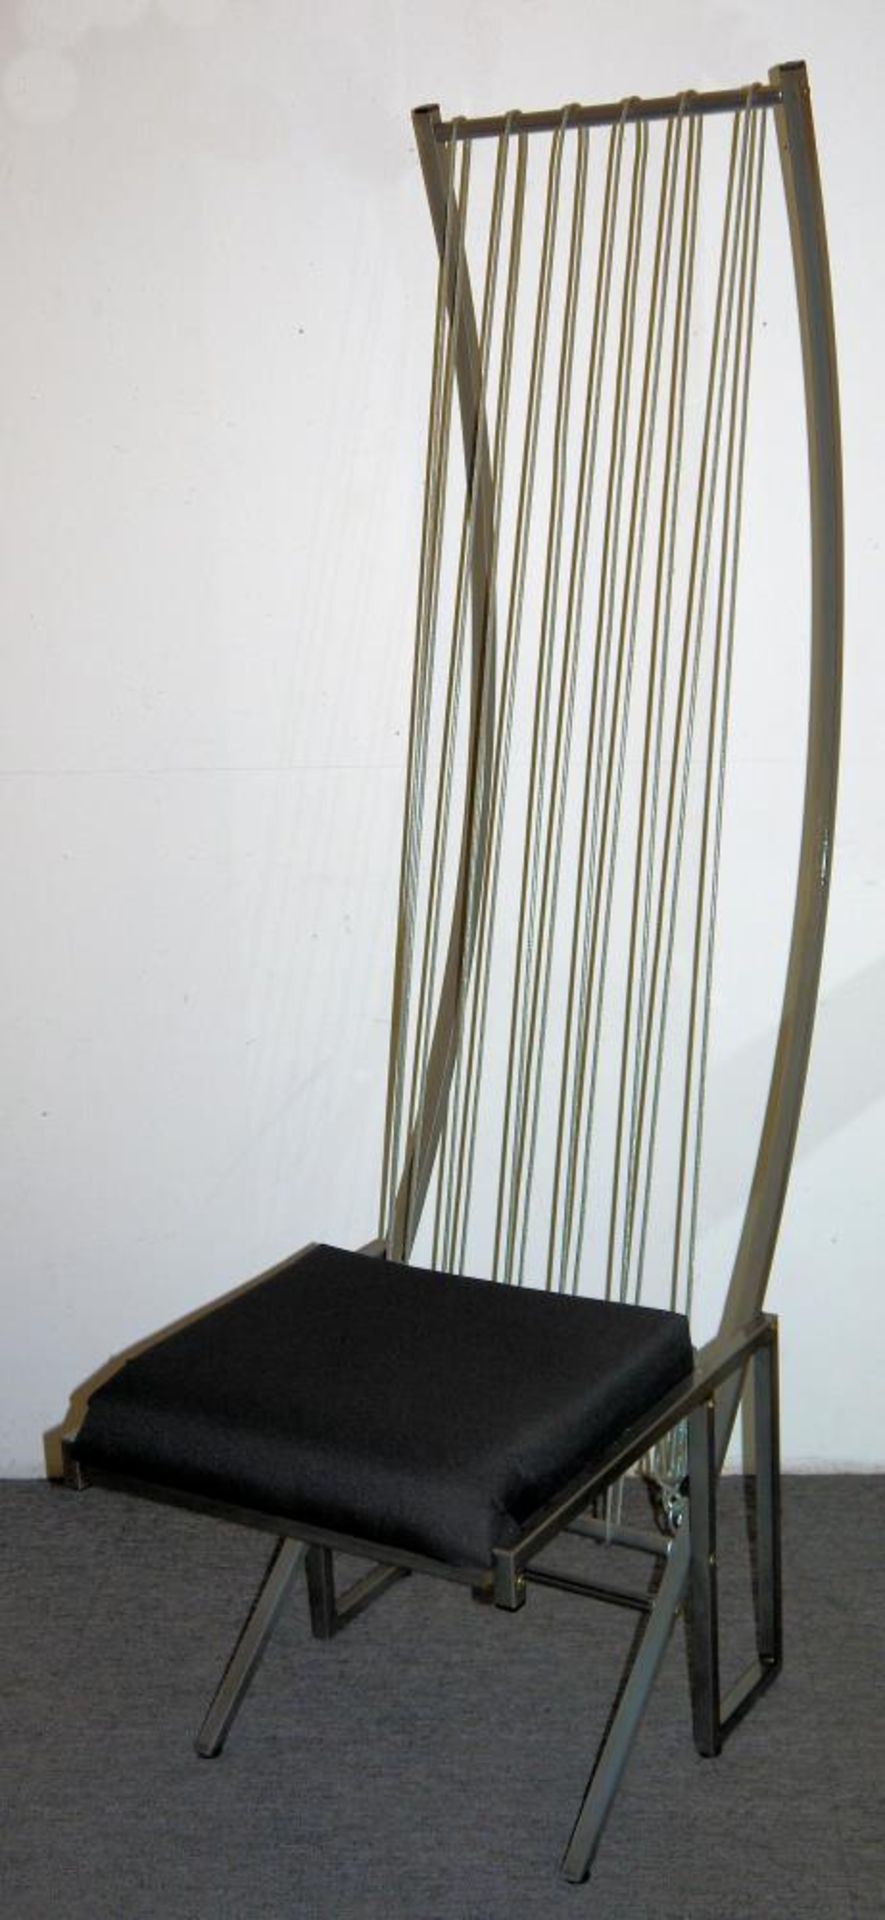 Designer-Stuhl der 1980er Jahre aus Eisen und Spannseil Individueller Stuhl aus beschichtetem